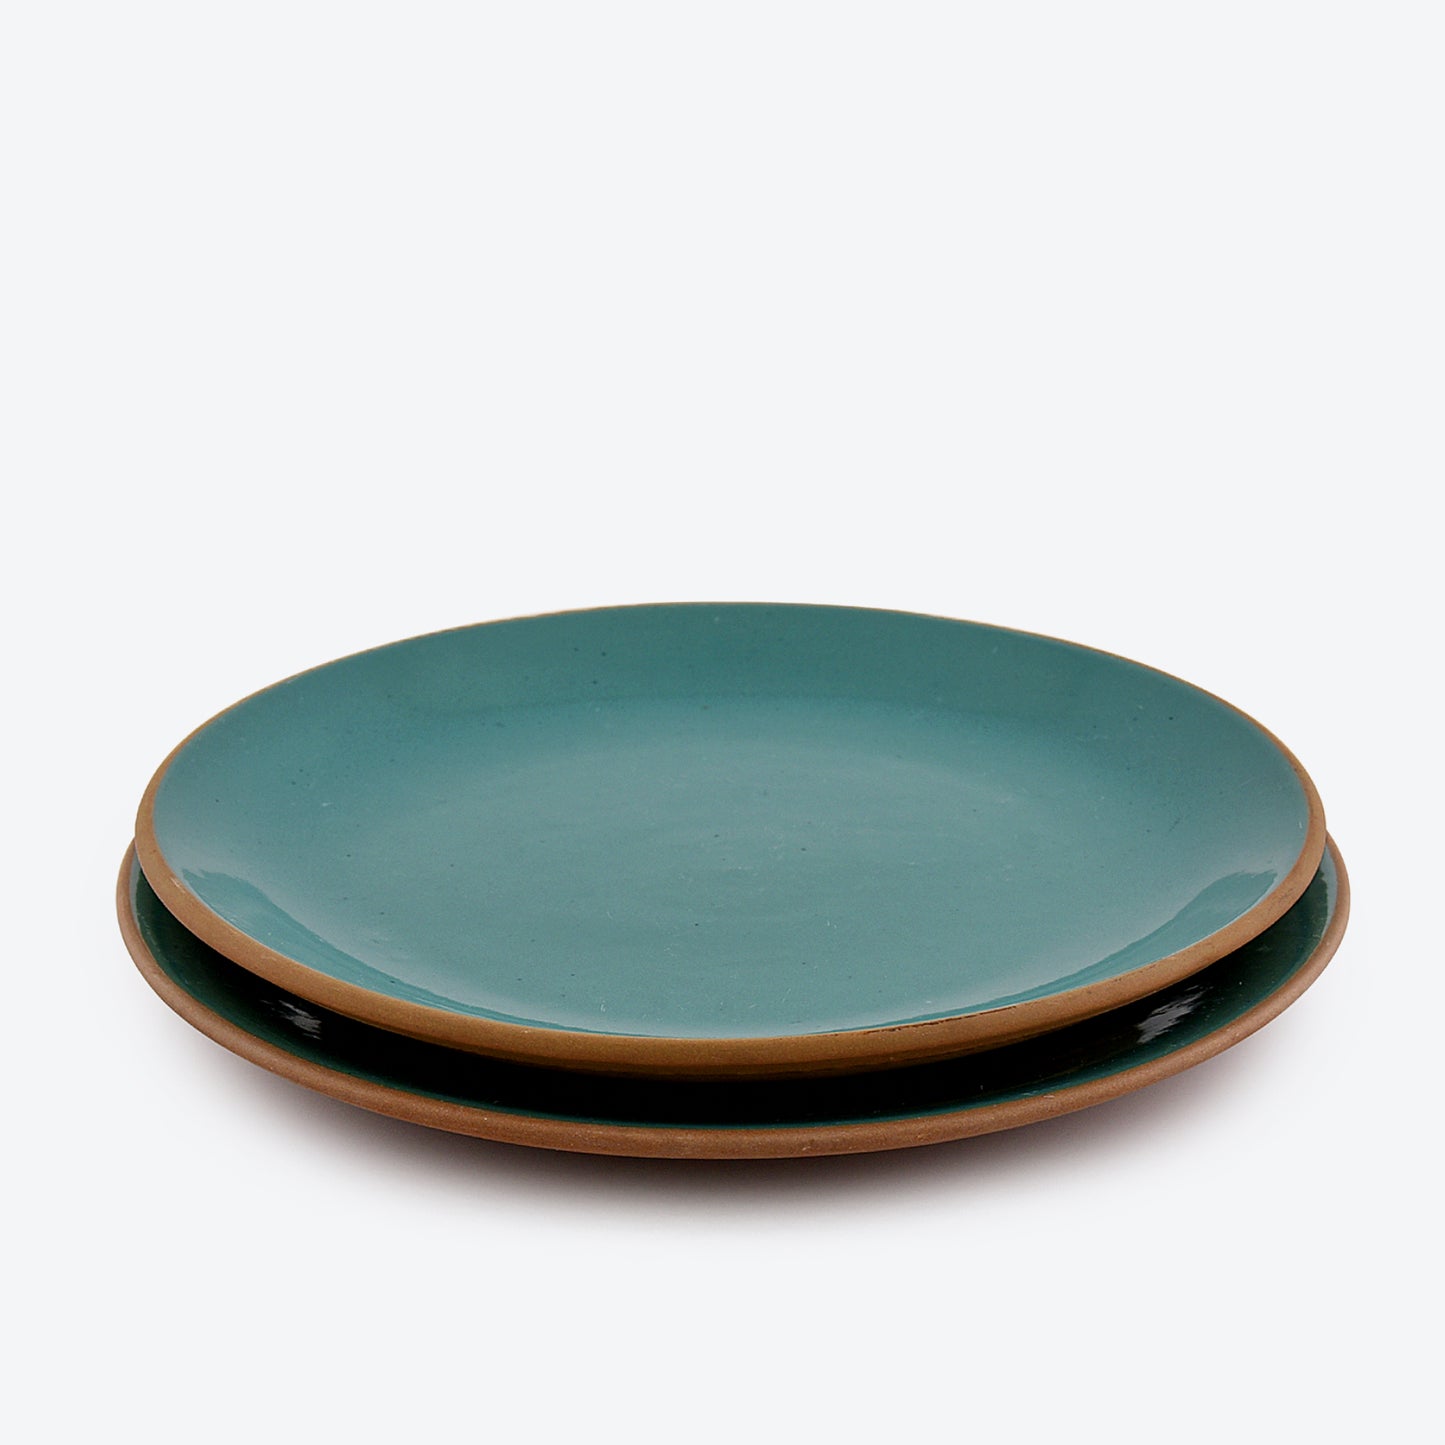 Garden Green Plate (Set of 2 Plates)